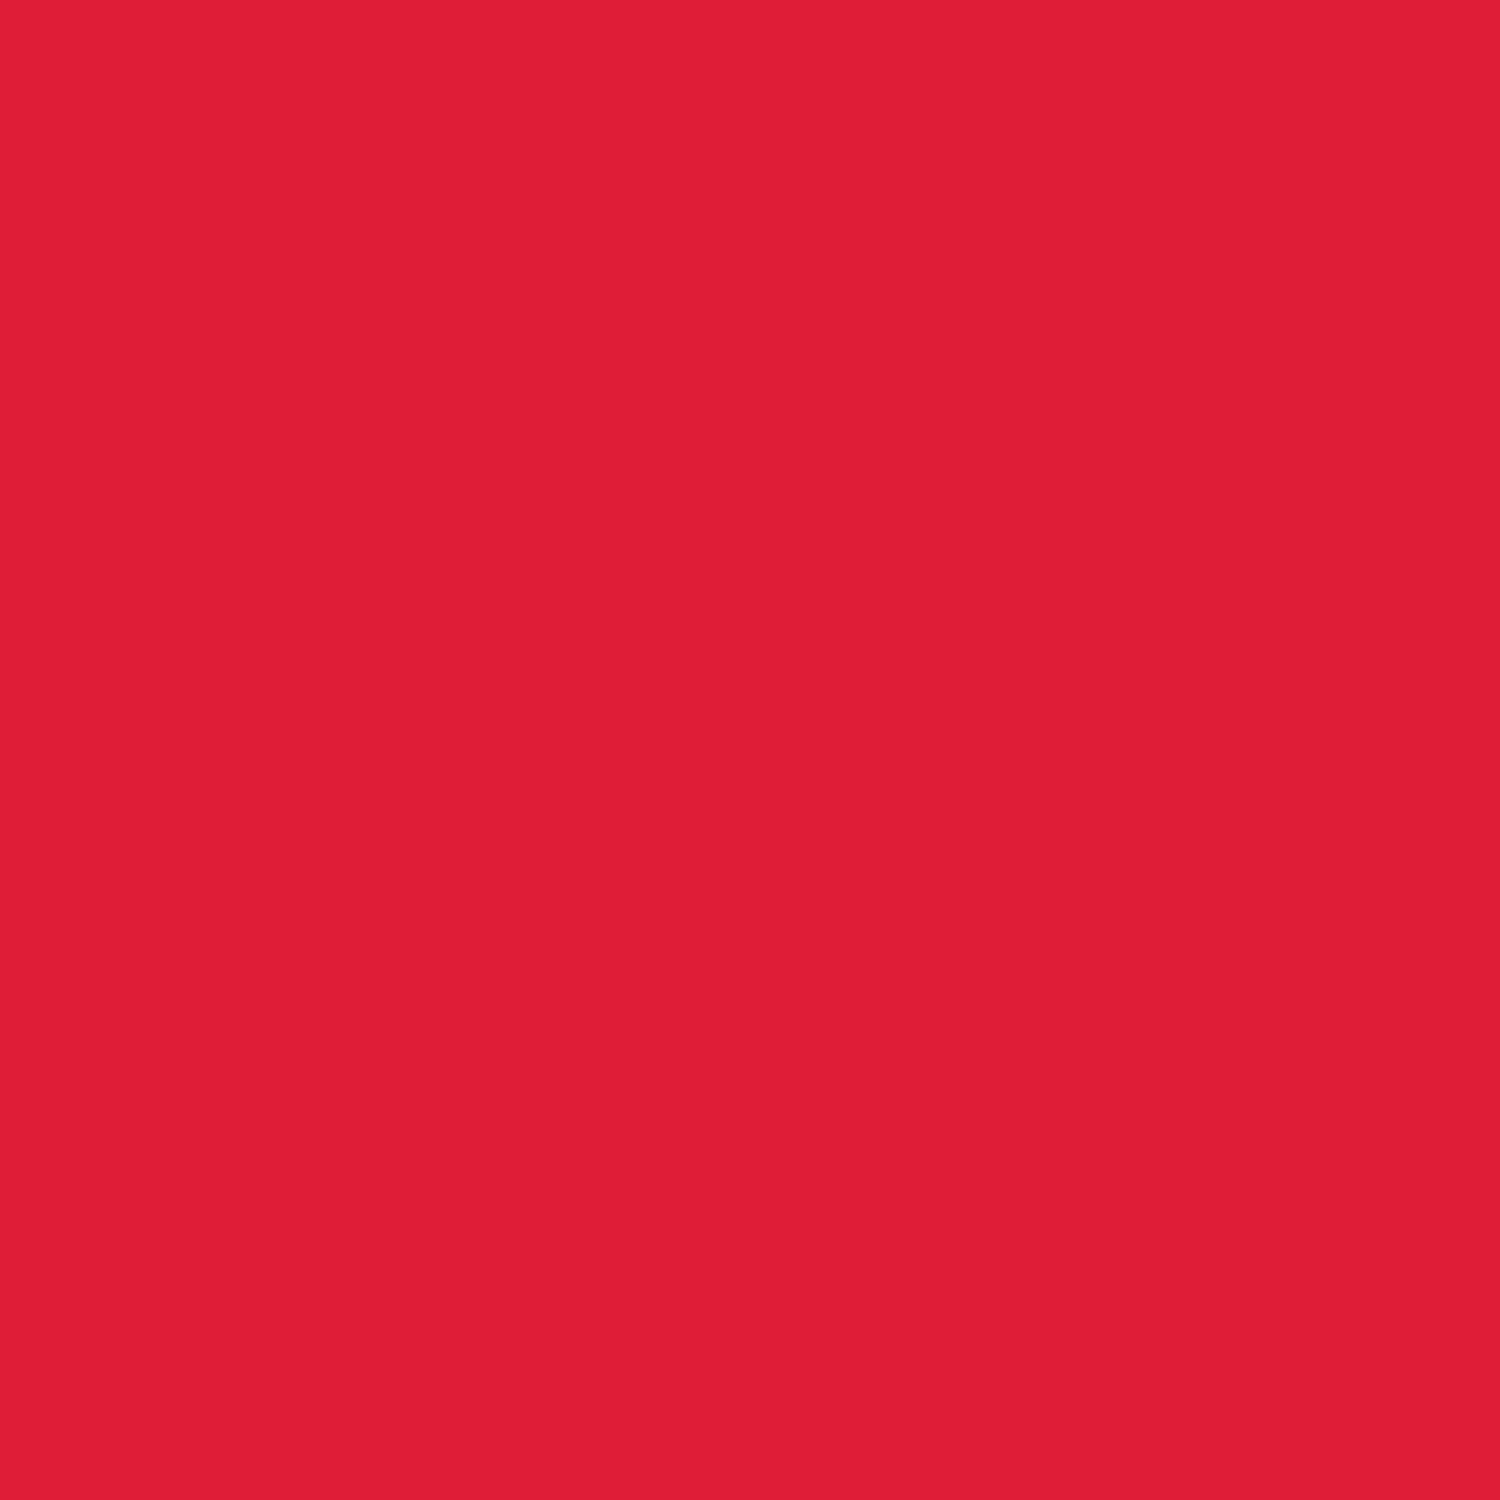 Tulip Red 1-Color Tie-Dye Kit - 3